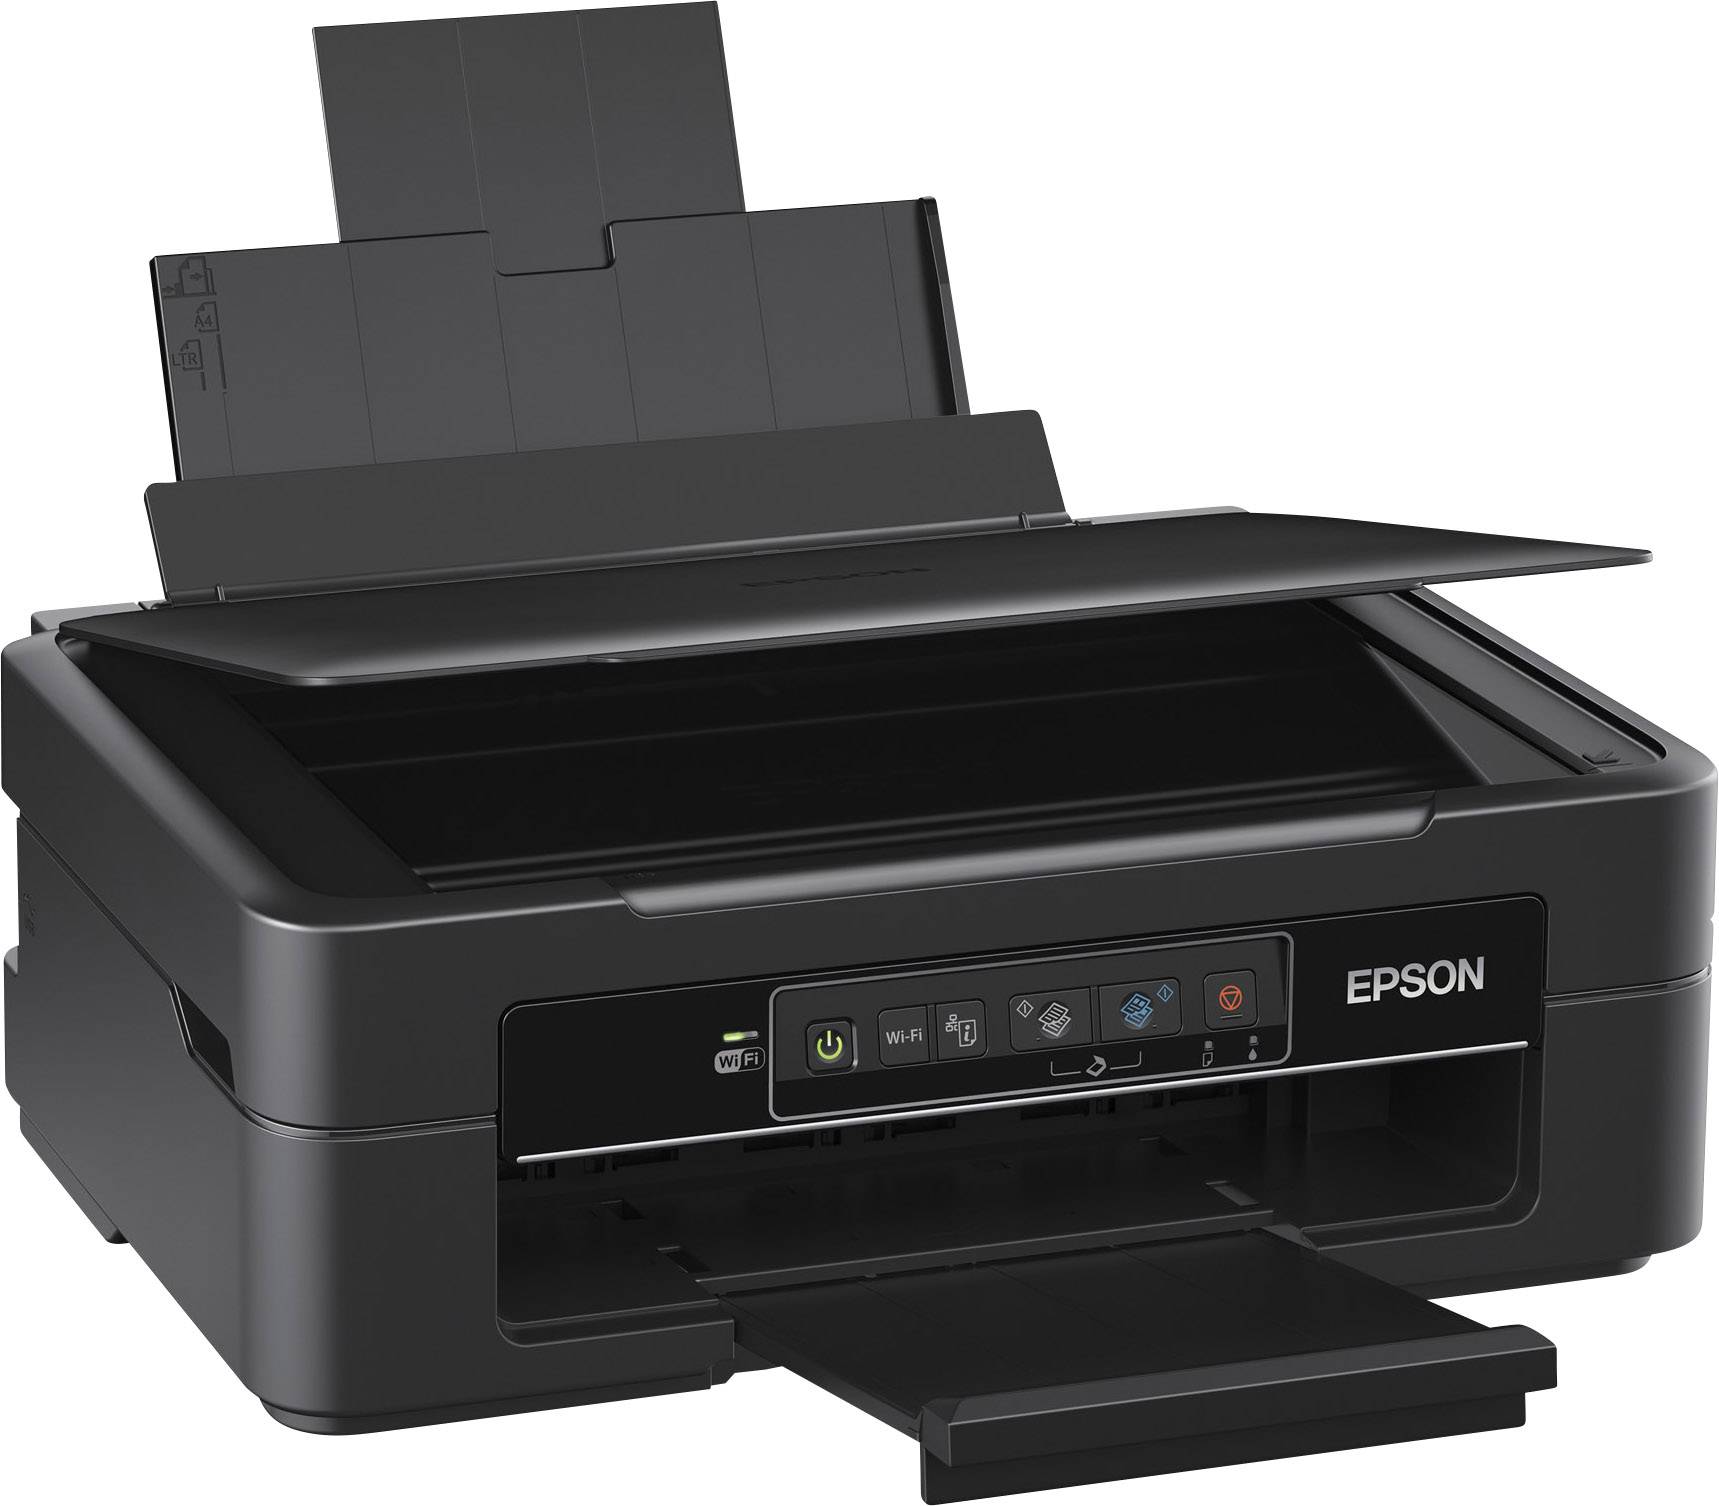 best home printer scanner copier 2013